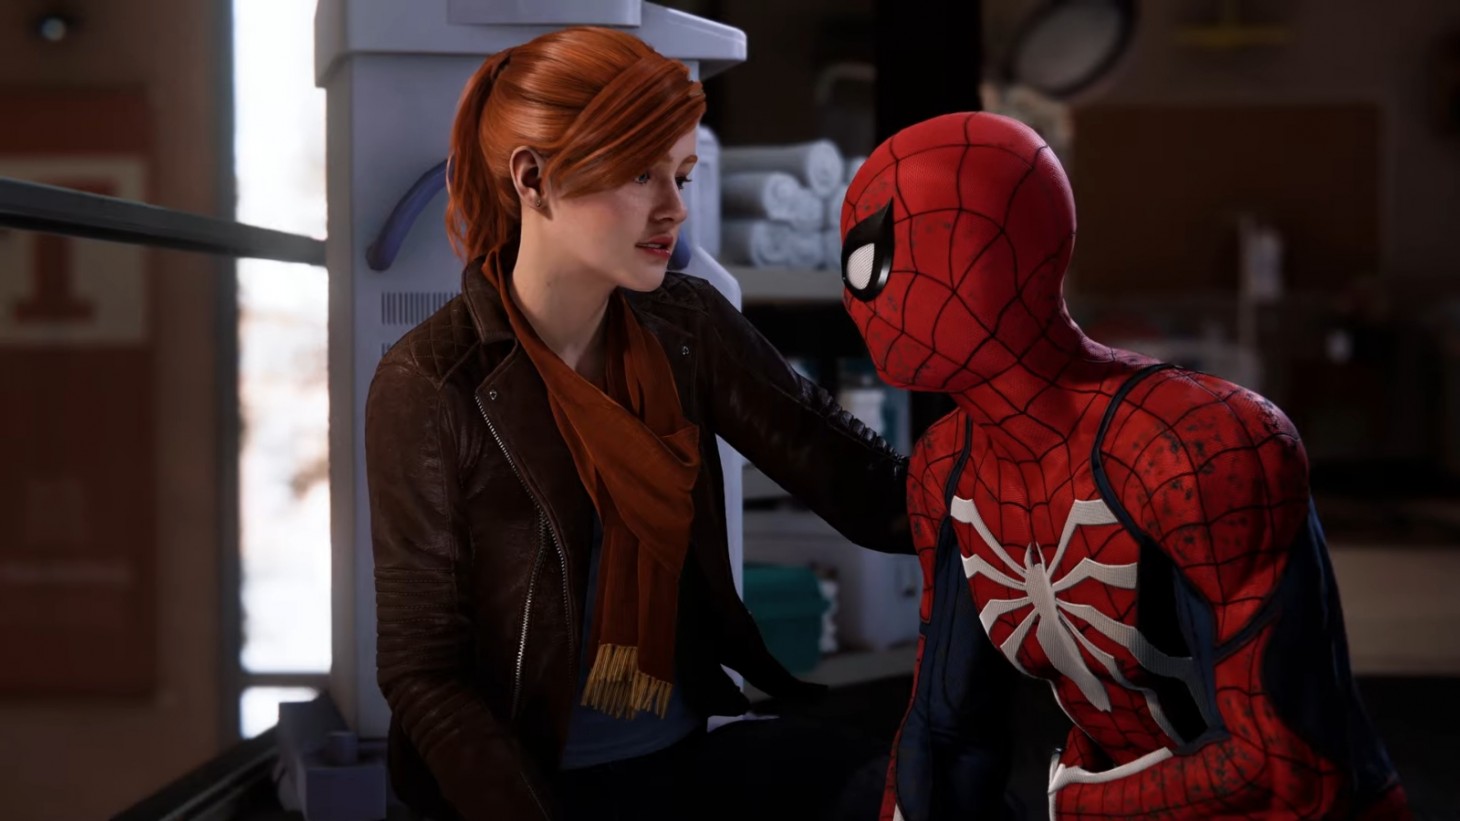 Preços baixos em Spider-man PC Video Games